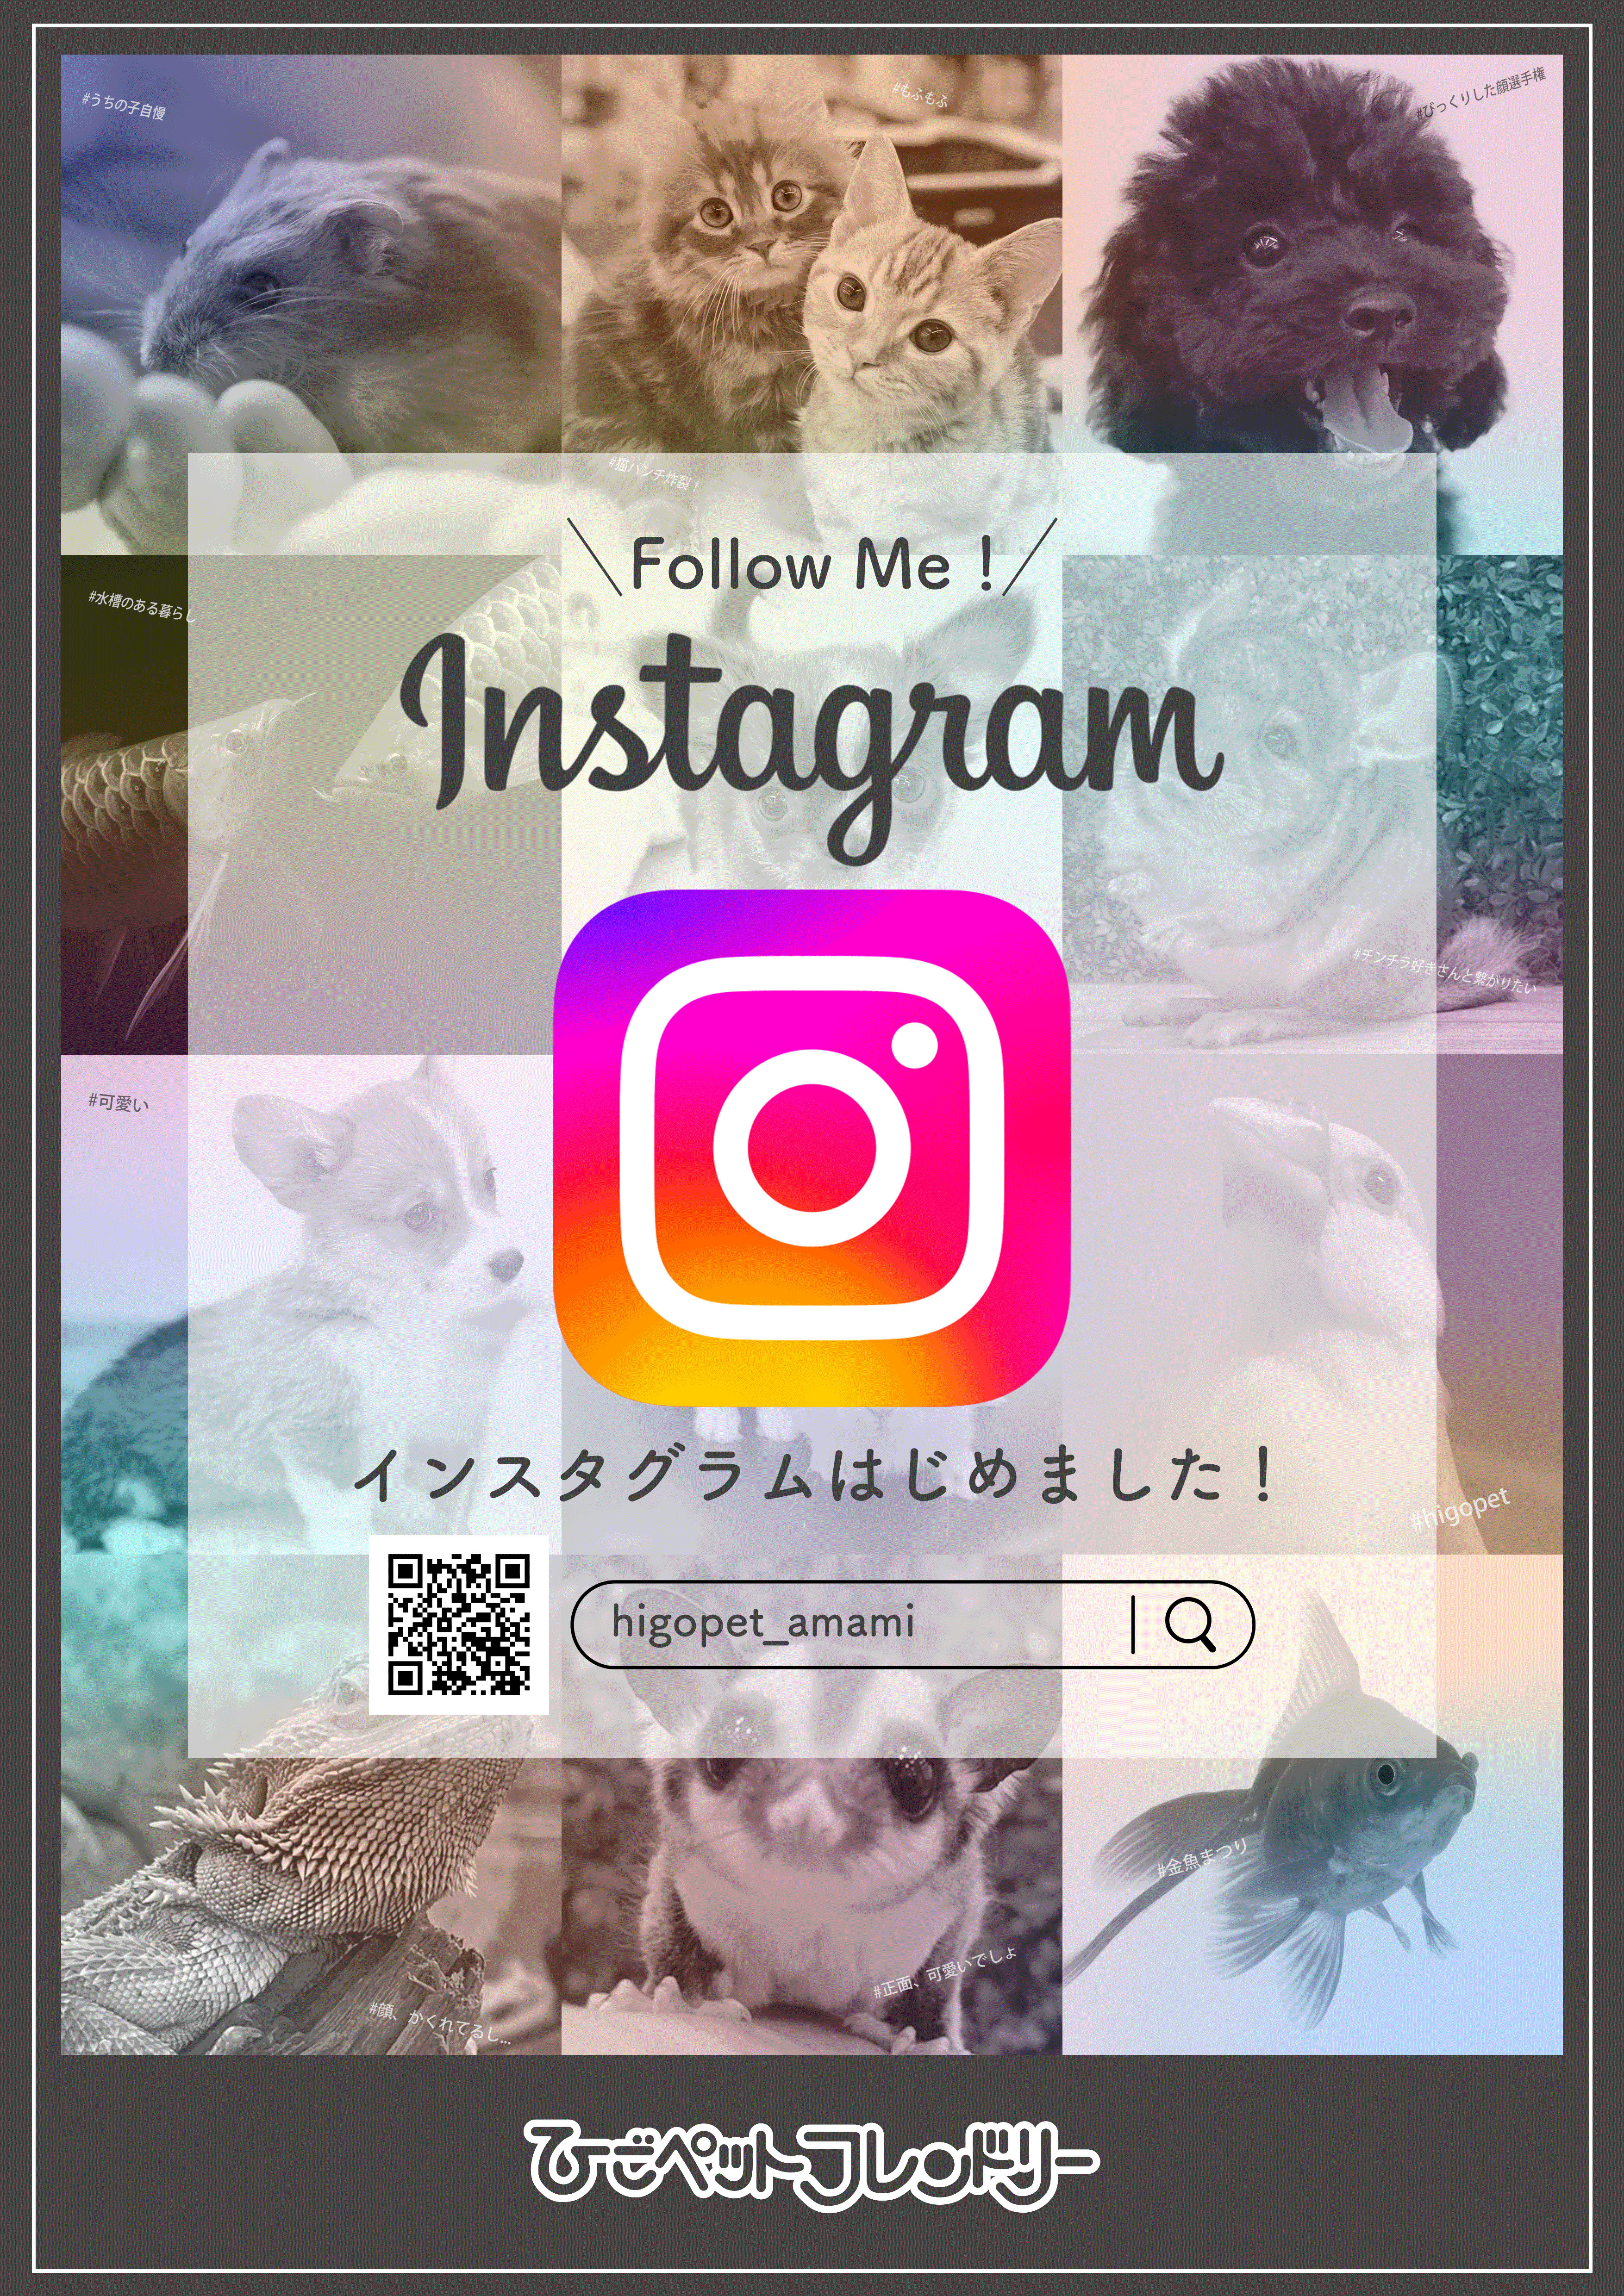 【67・天美】Instagram告知ポスター_20220619